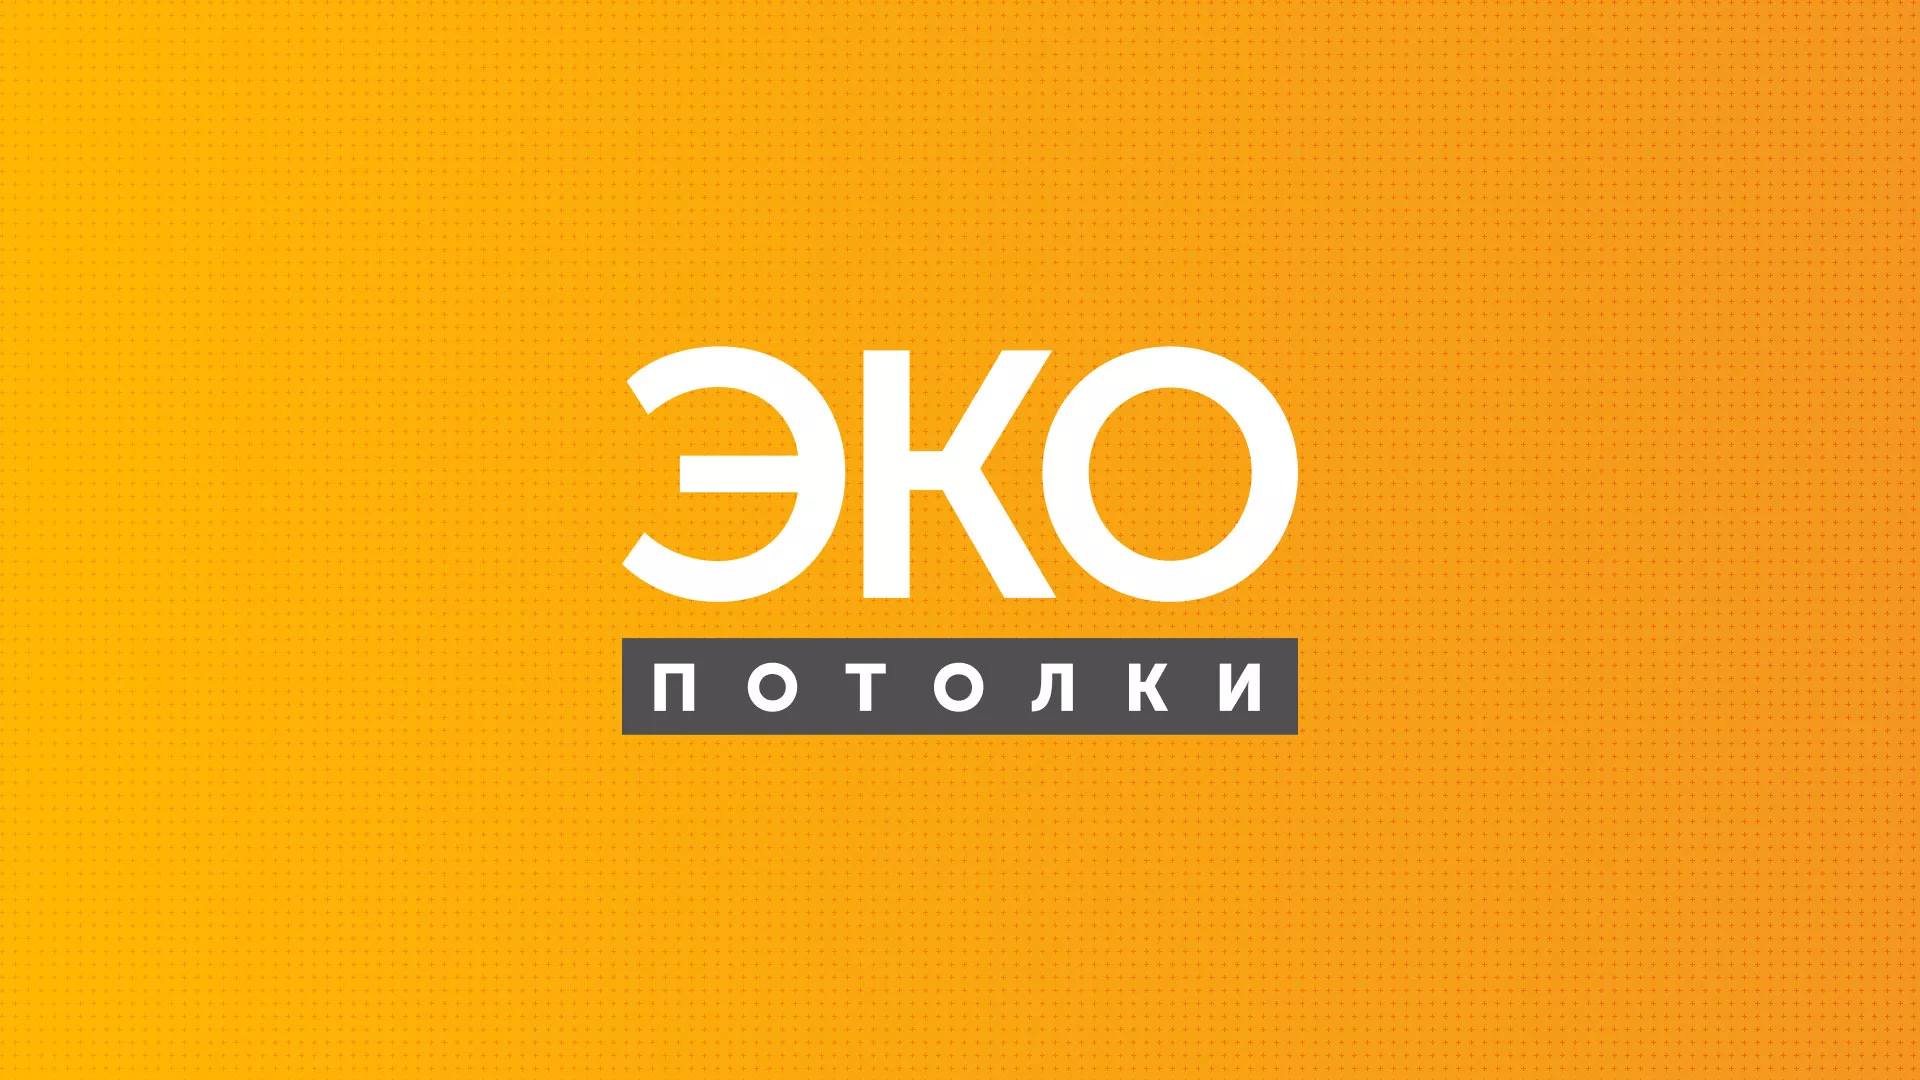 Разработка сайта по натяжным потолкам «Эко Потолки» в Обнинске